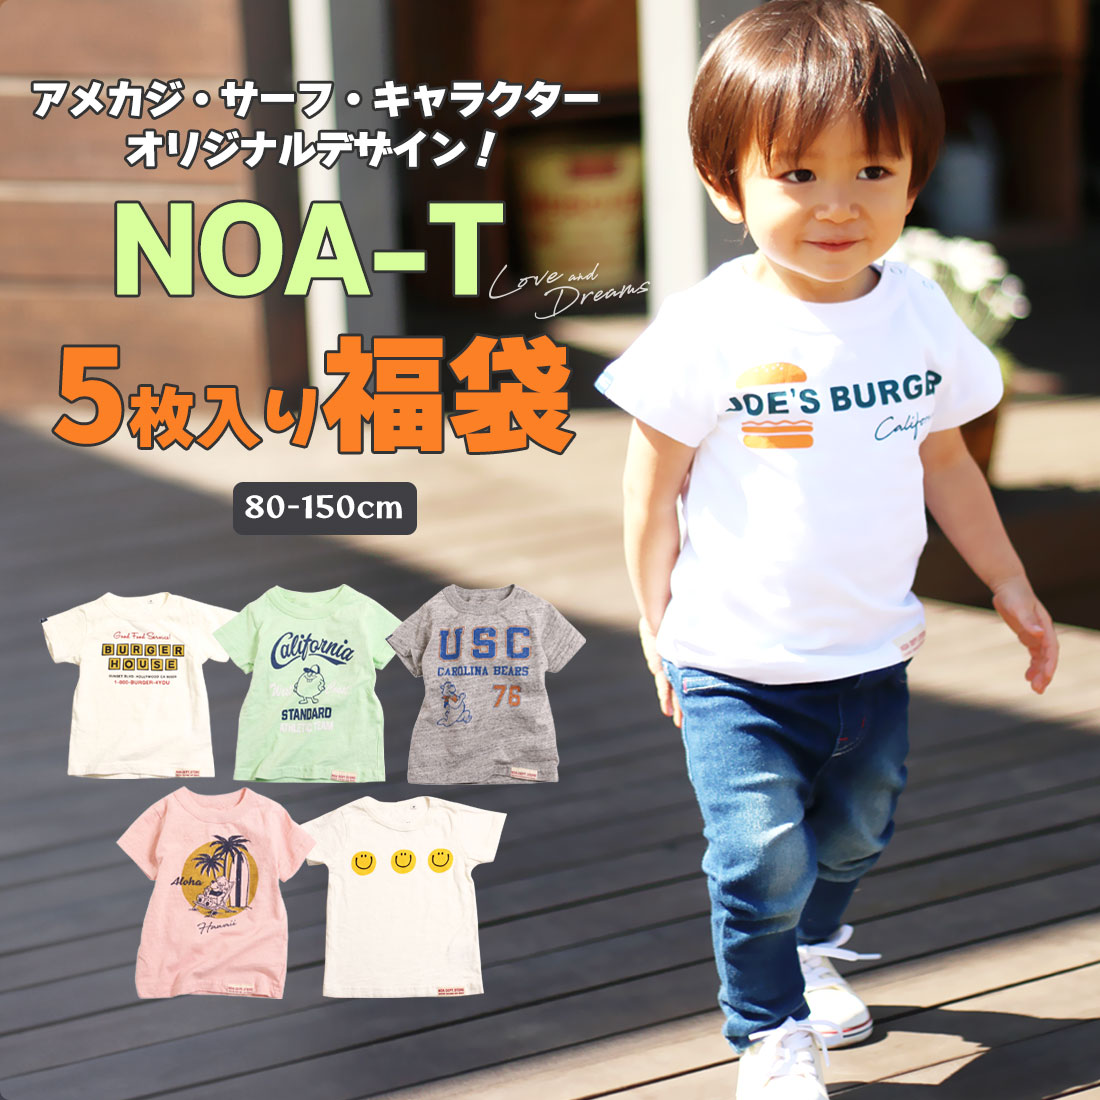 オリジナルデザインTシャツ NOA-T 5枚入り福袋（80cm 90cm 100cm 110cm 120cm 130cm 140cm 150cm）男の子向け まとめ…